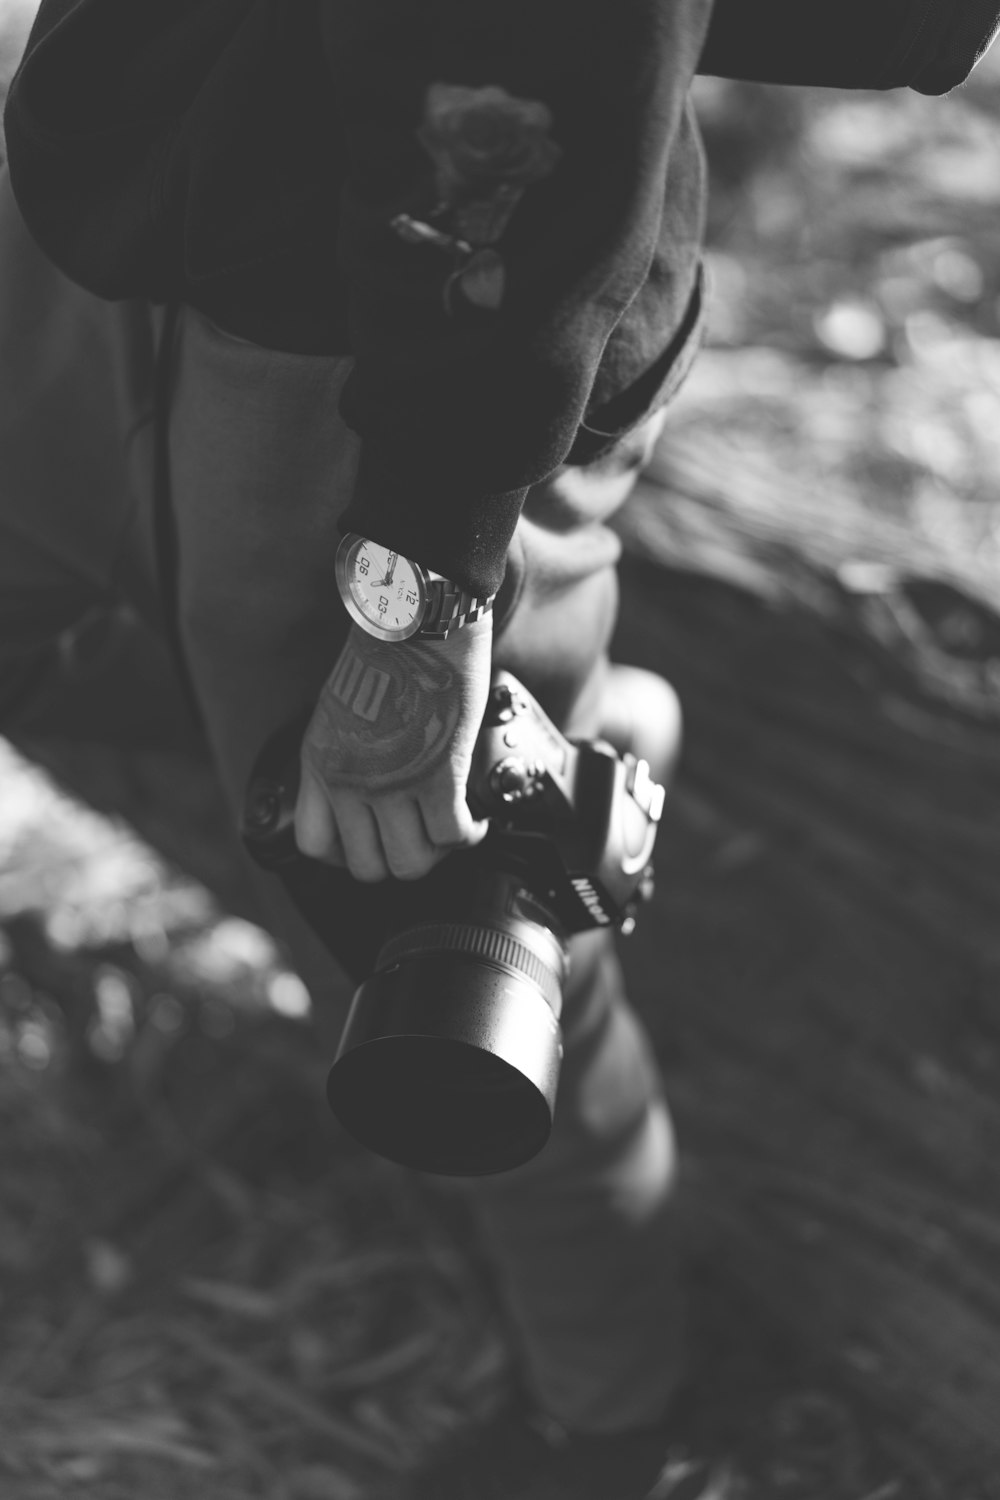 photo en niveaux de gris d’une personne tenant un appareil photo reflex numérique